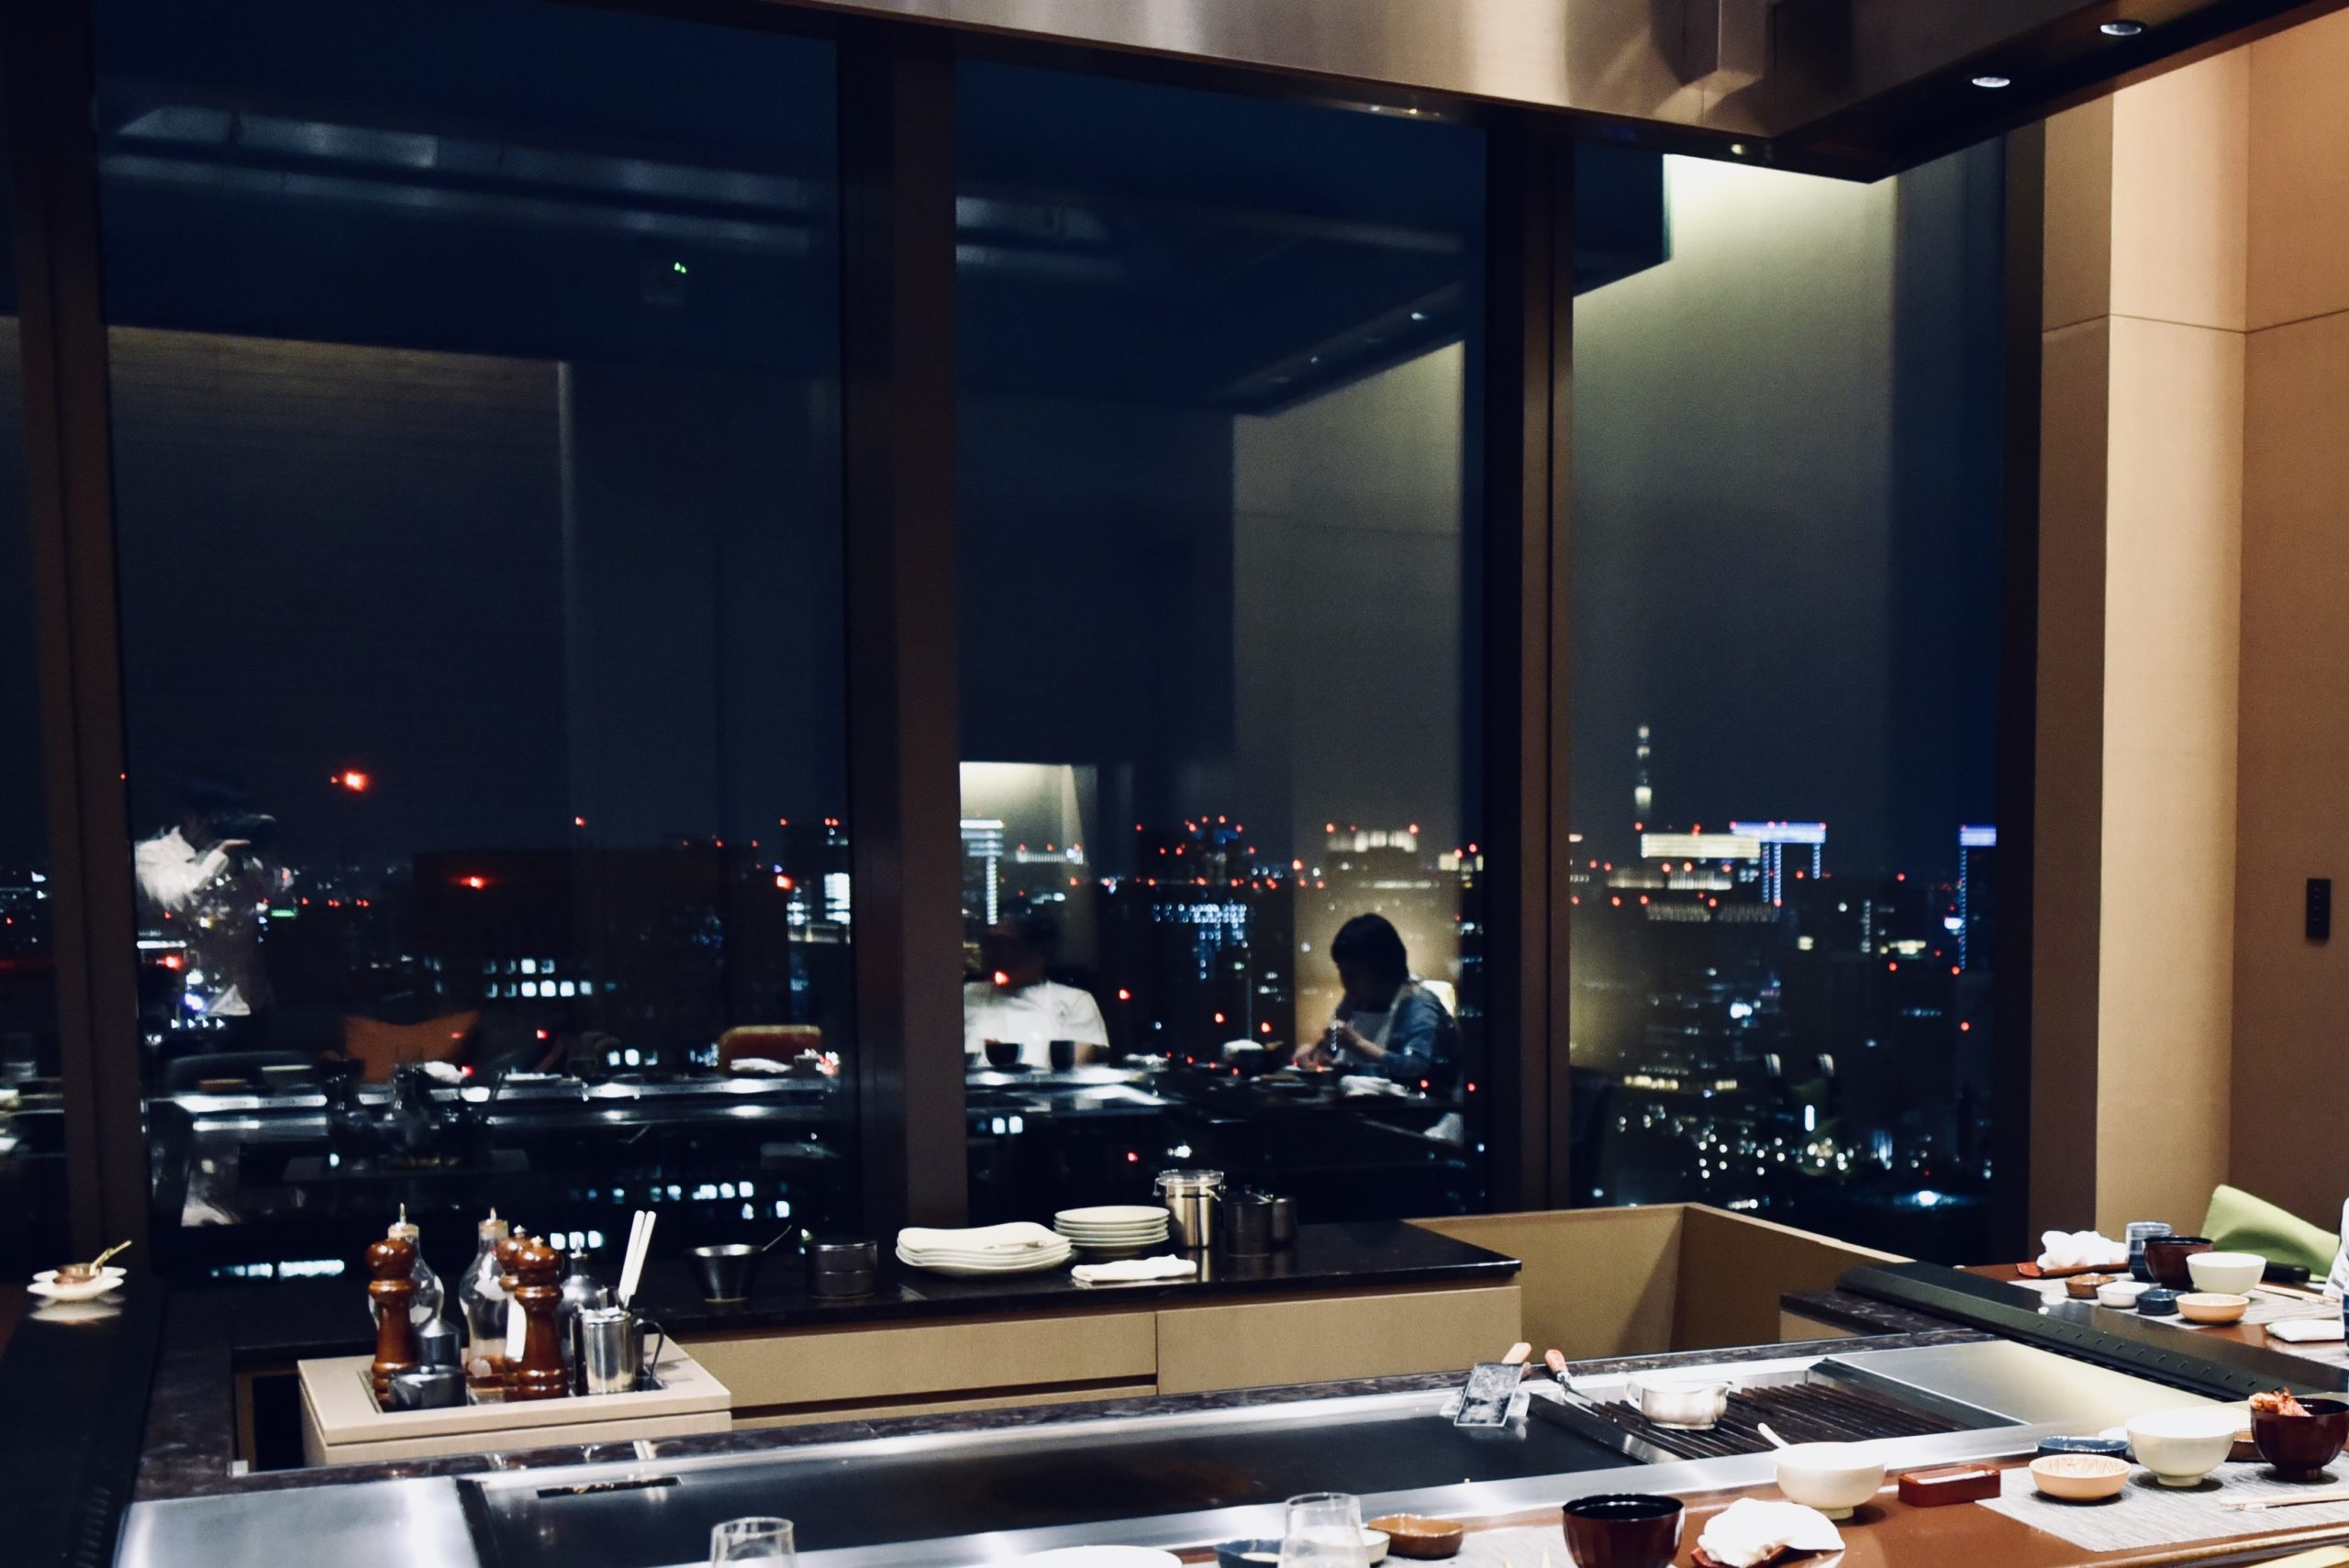 ホテルオークラ東京のさざんかは 夜景と雰囲気 鉄板焼きの演出を楽しめるキラキラレストラン 港区ブログ